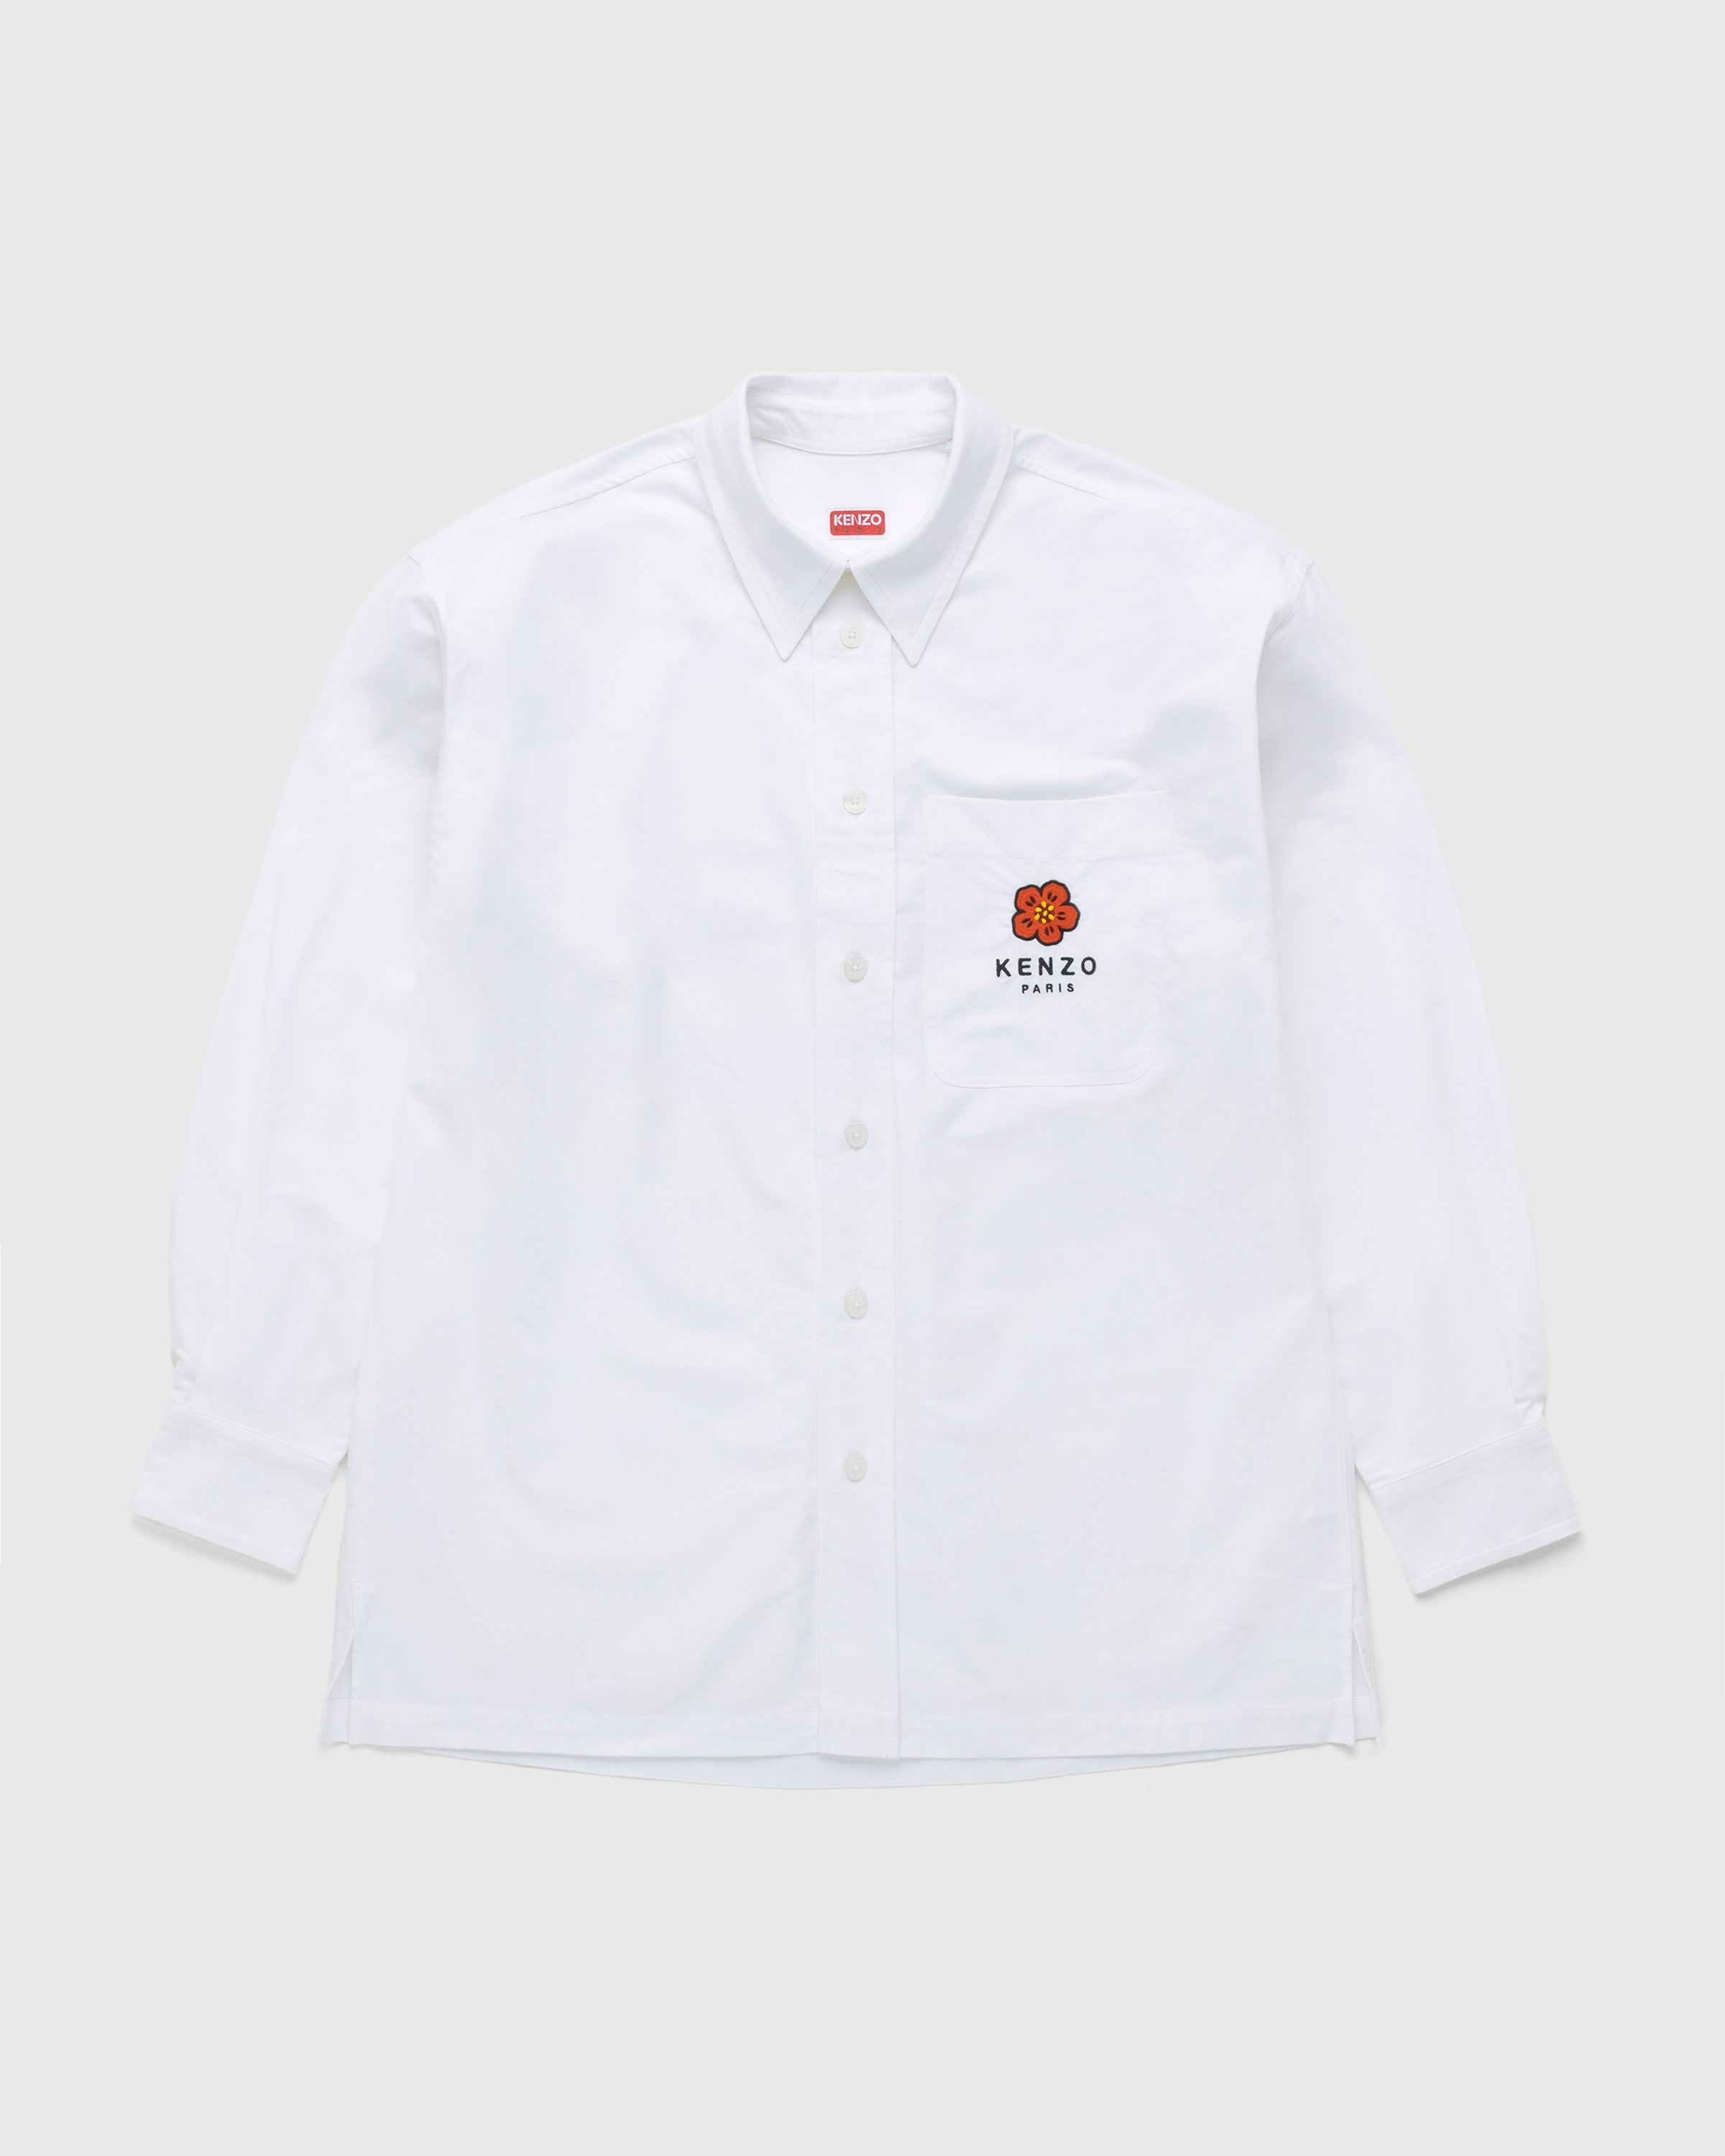 Kenzo – Boke Flower Crest Overshirt White - Longsleeve Shirts - White - Image 1